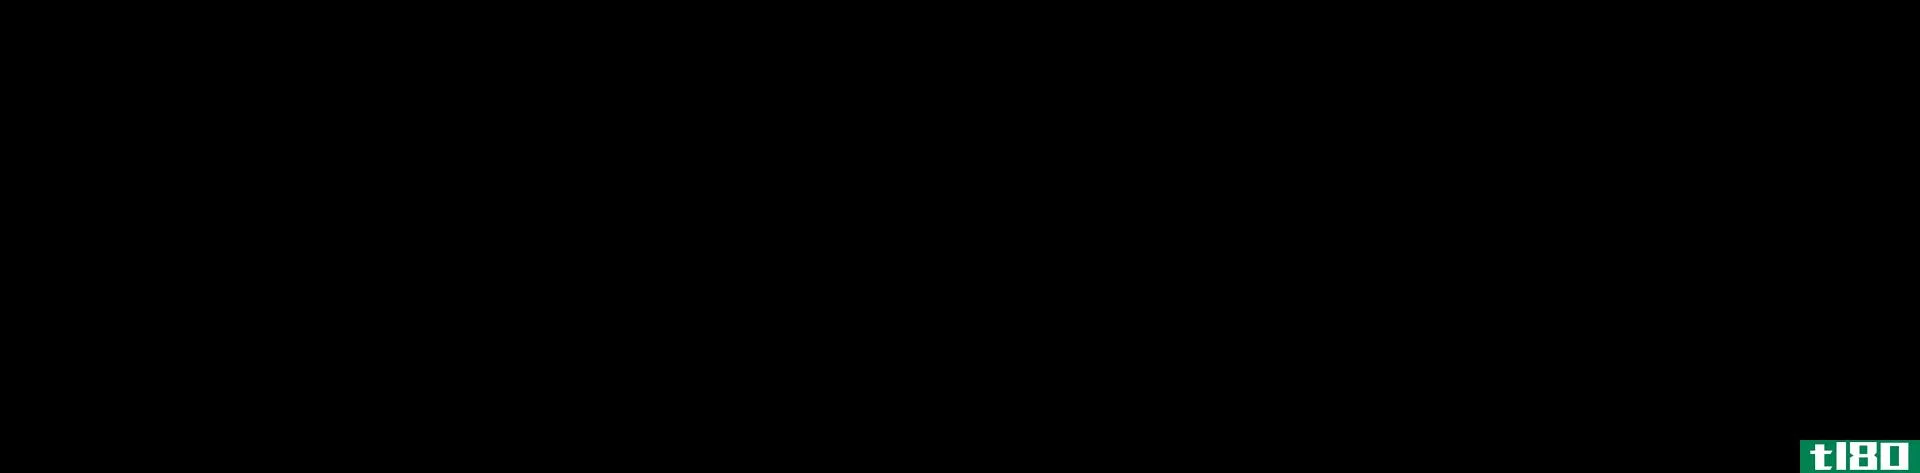 茴香醚(anisole)和乙醚(diethyl ether)的区别